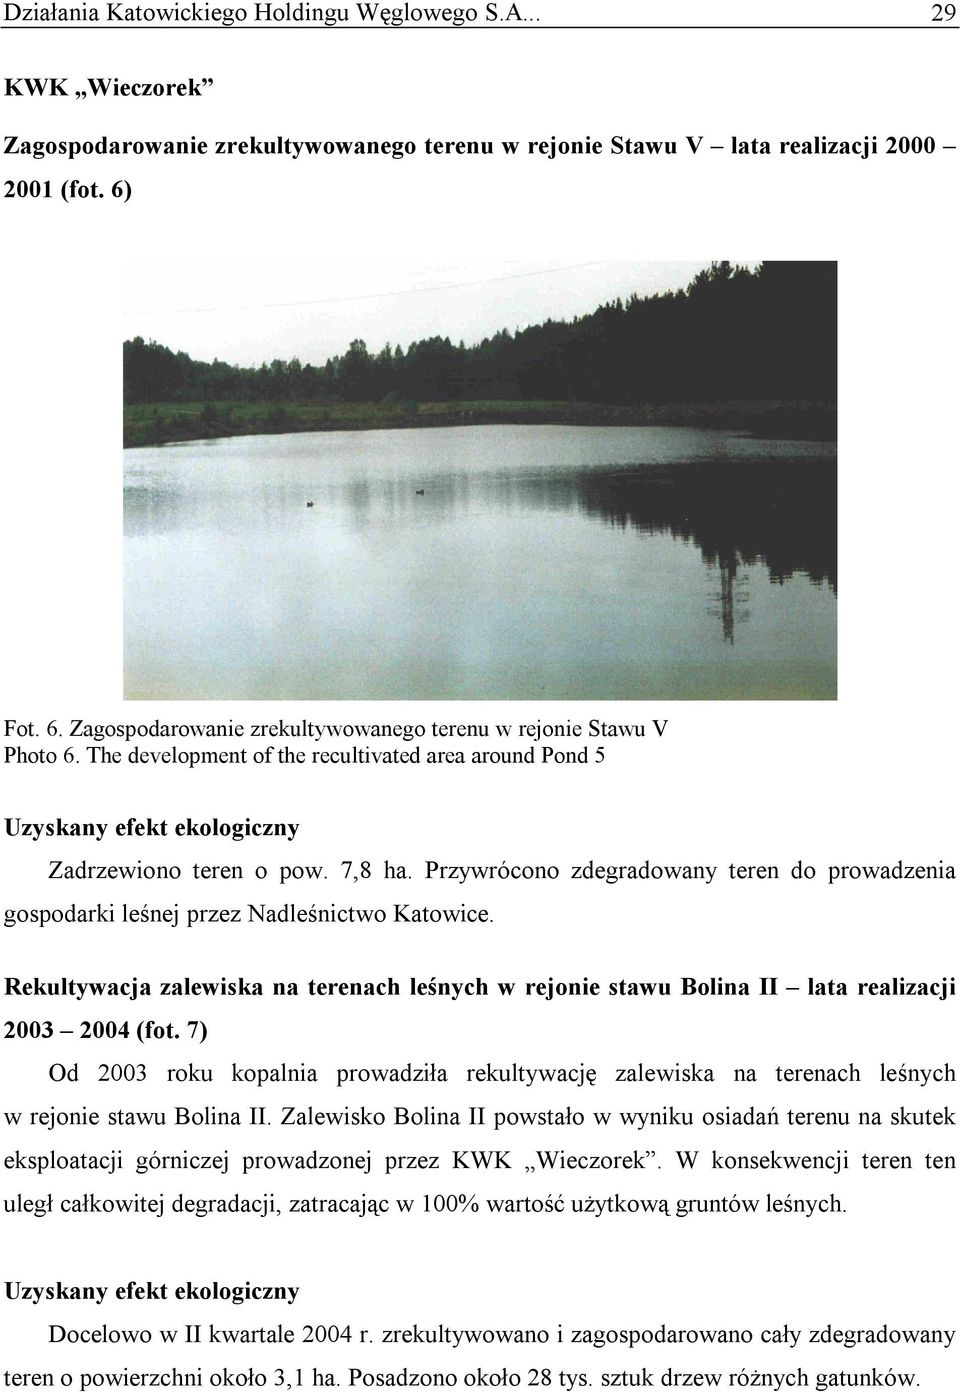 Przywrócono zdegradowany teren do prowadzenia gospodarki leśnej przez Nadleśnictwo Katowice. Rekultywacja zalewiska na terenach leśnych w rejonie stawu Bolina II lata realizacji 2003 2004 (fot.